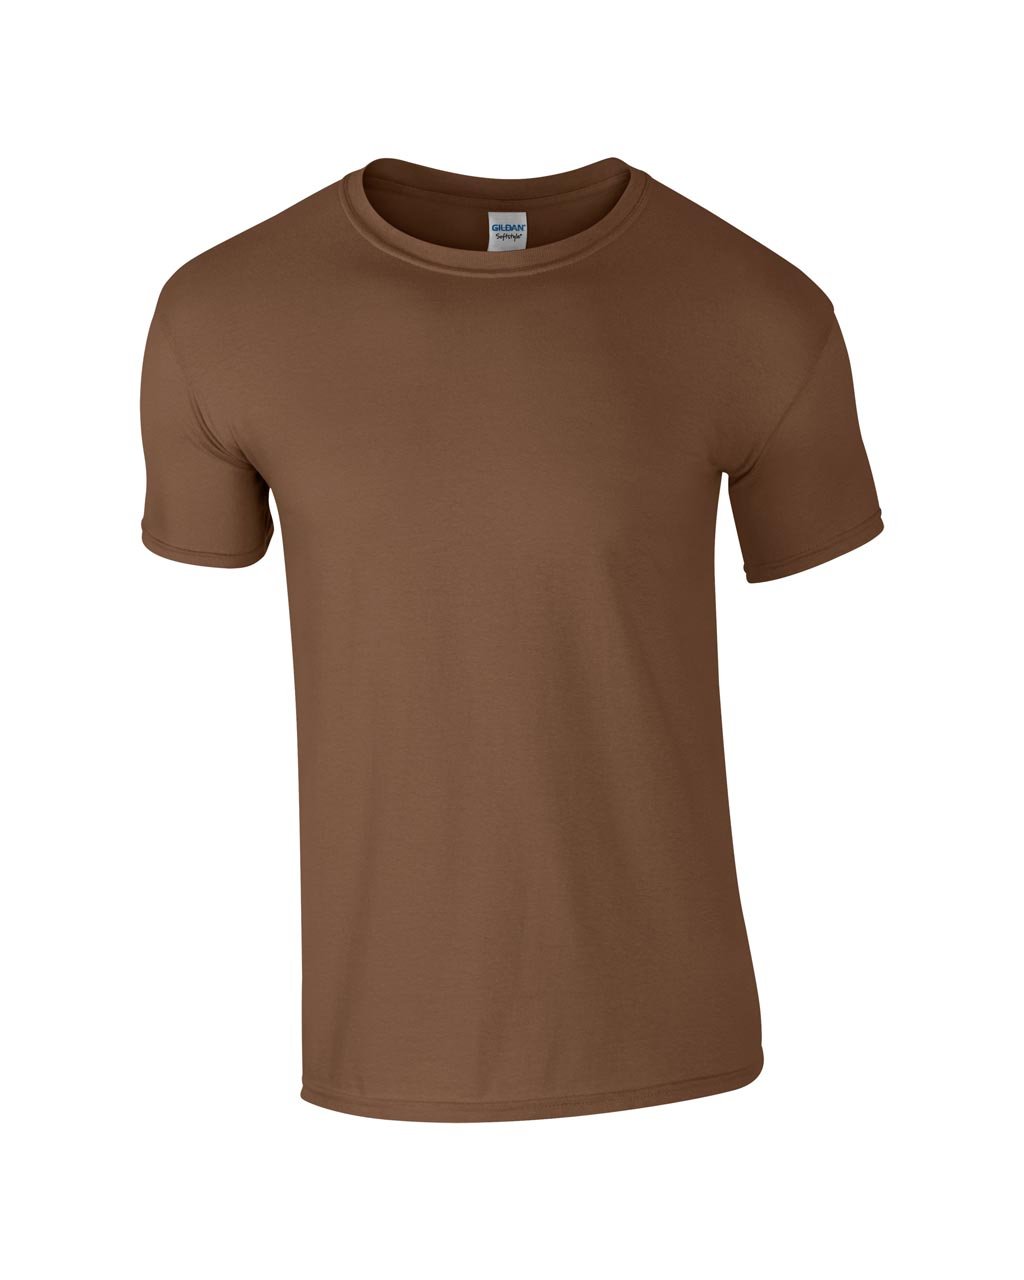 Tricou barbati Softstylesoftstyle-adult-t-shirt-3395.jpg